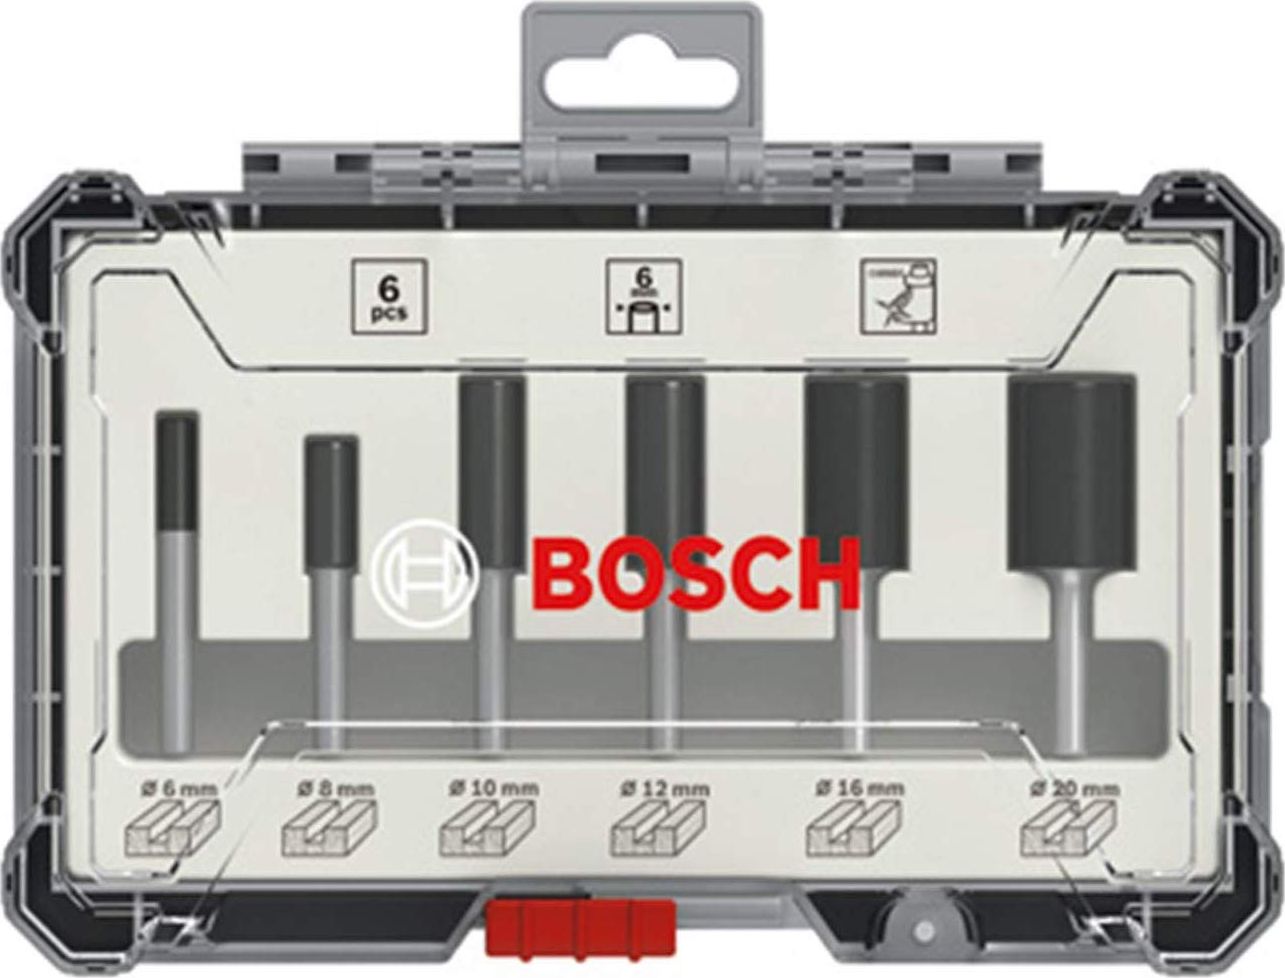 Bosch 6 pcs Groove Cutter Set 6mm Shank